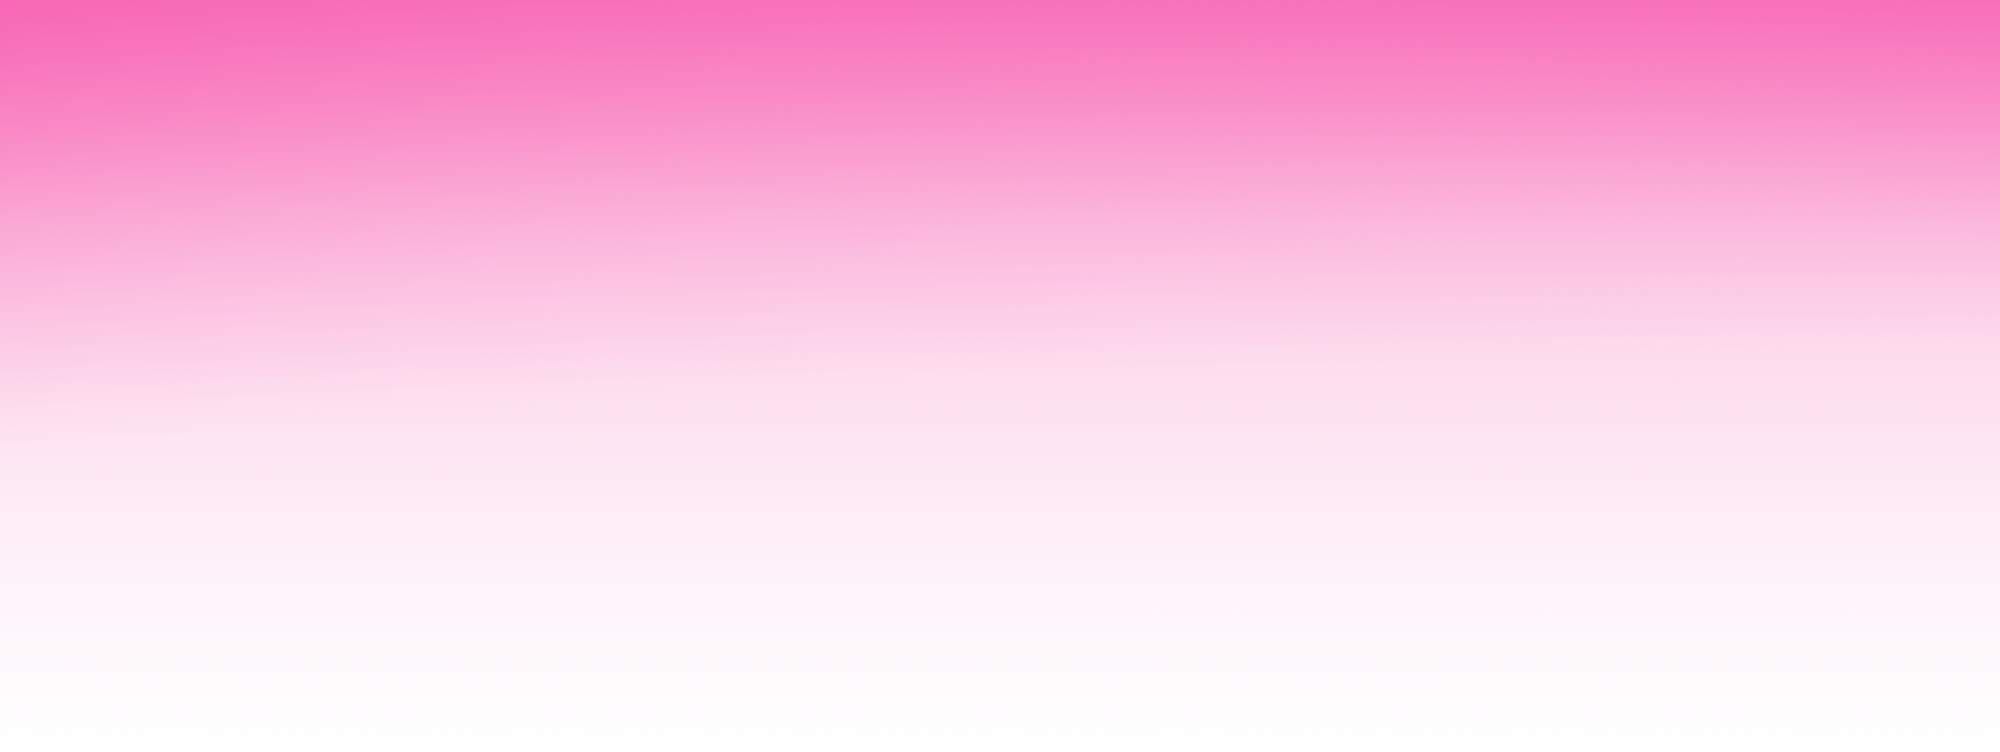 pink corner gradient